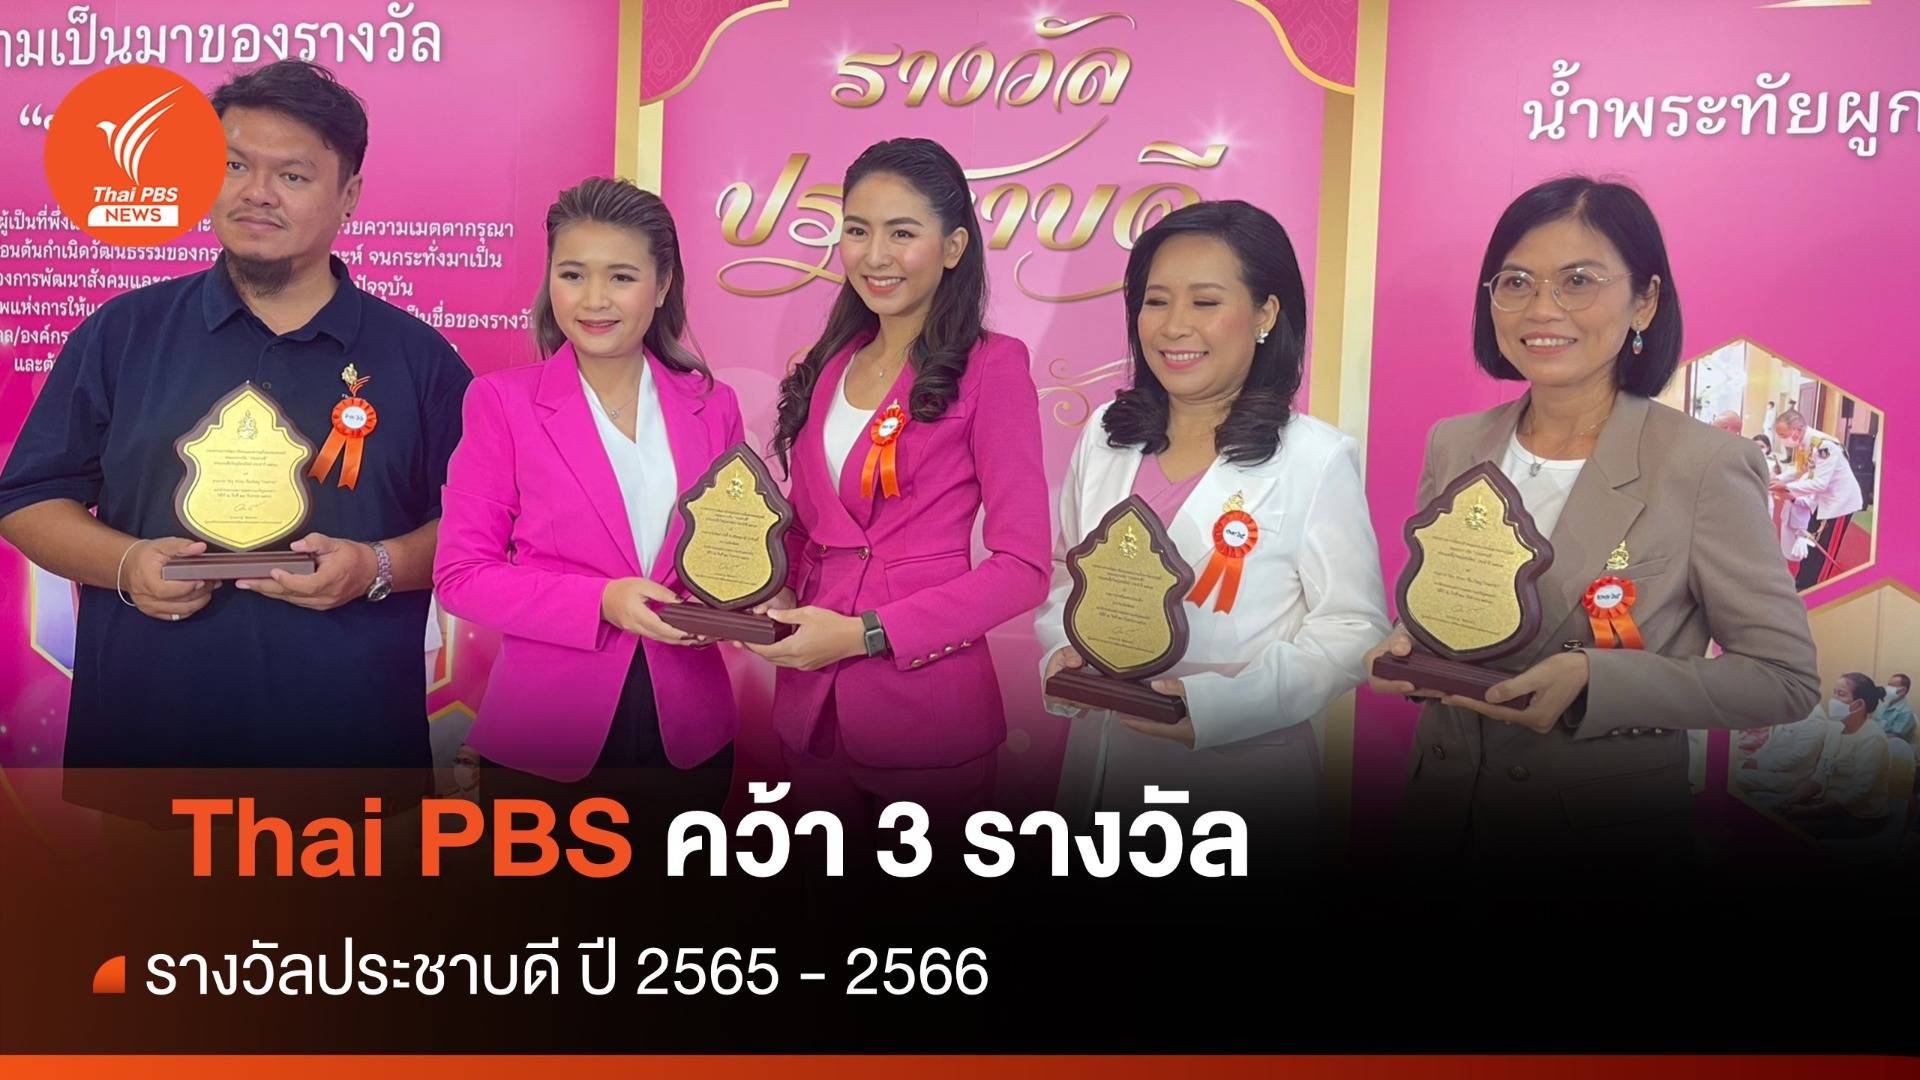 Thai PBS คว้า 3 รางวัลประชาบดี ปี 2565 - 2566